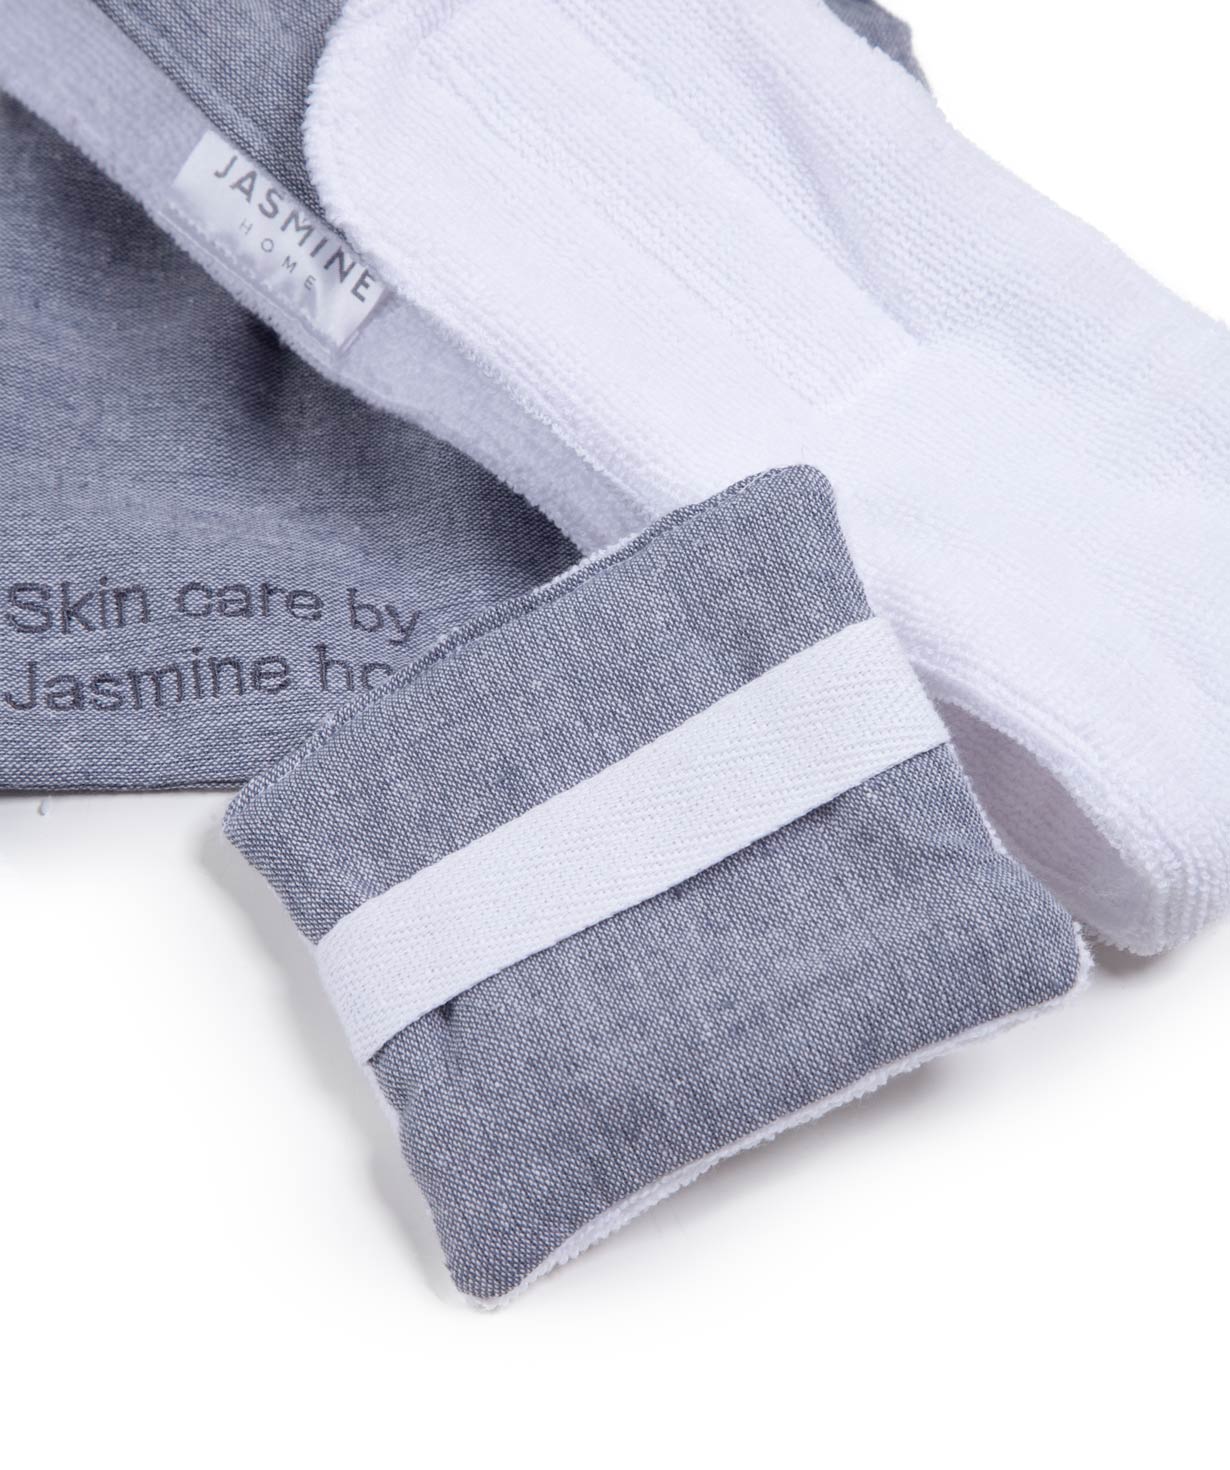 Набор для ухода «Jasmine Home» Skin Care №1